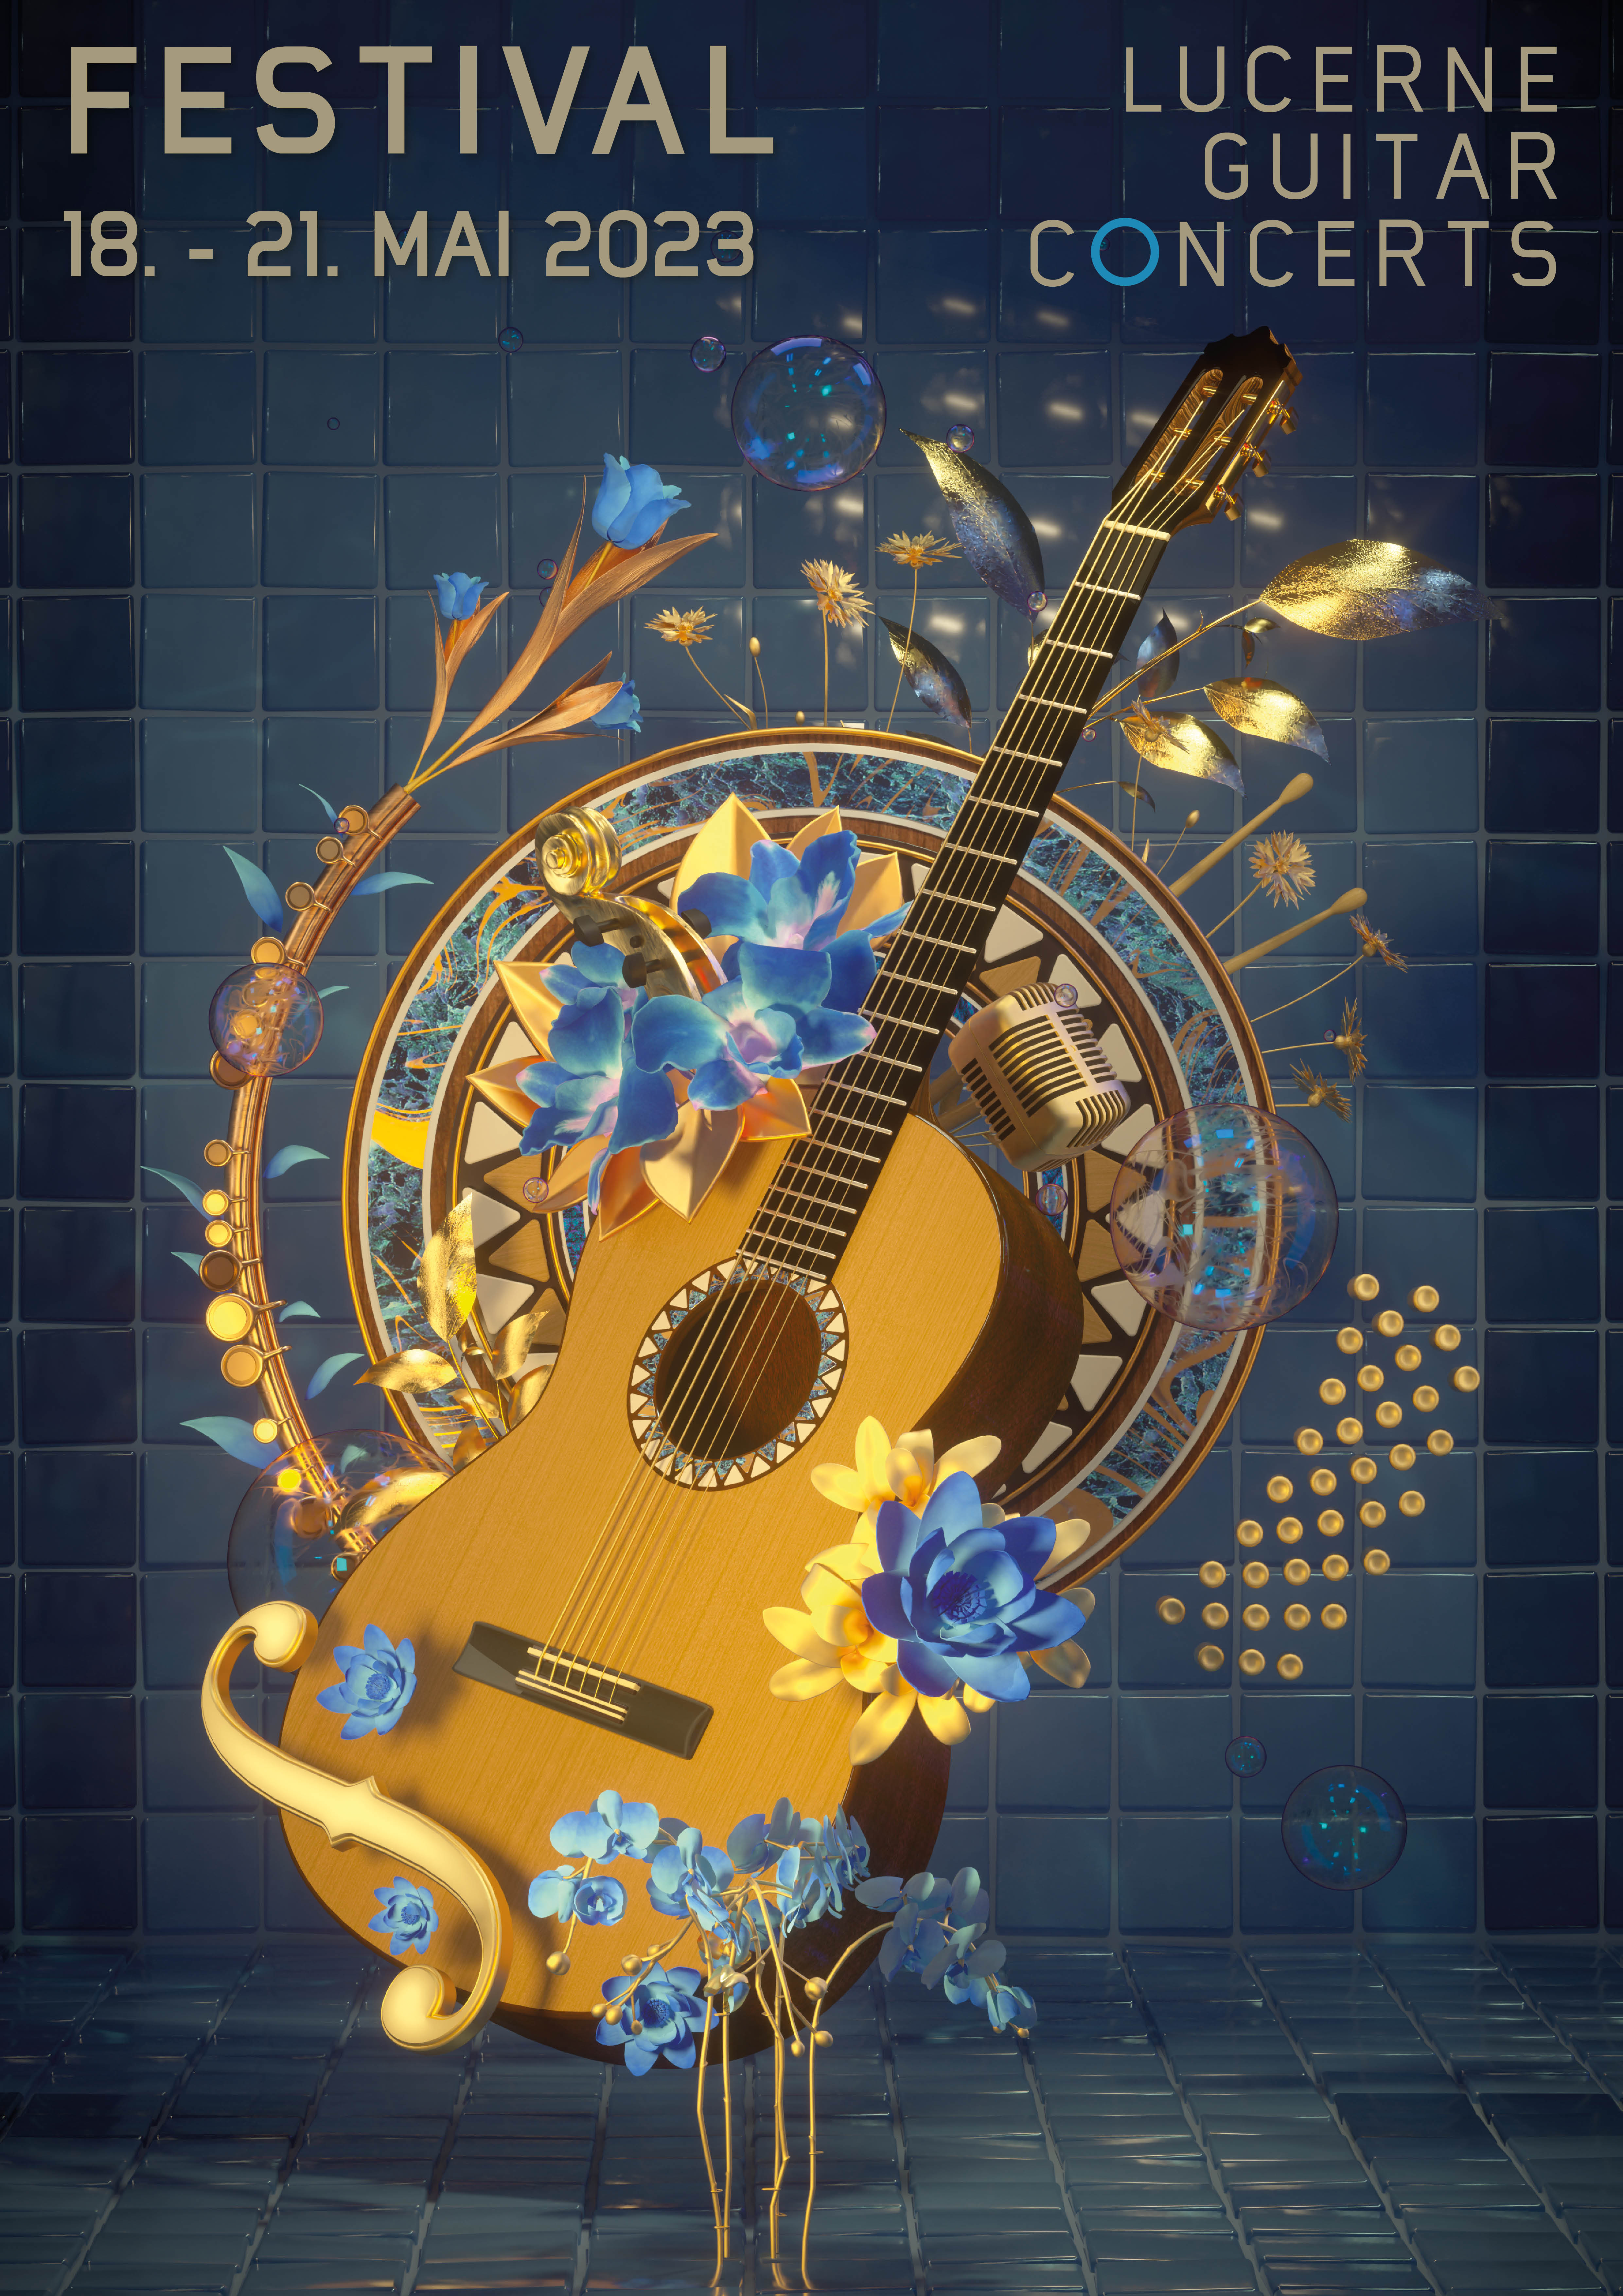 Ein Plakat zum FEstival mit einer Gitarre in der Bildmitte, aus der blaue und gelbe Blumen wachsen. IM Hintergrund eine Wand aus Kaceheln in verschiedenen Blautönen.